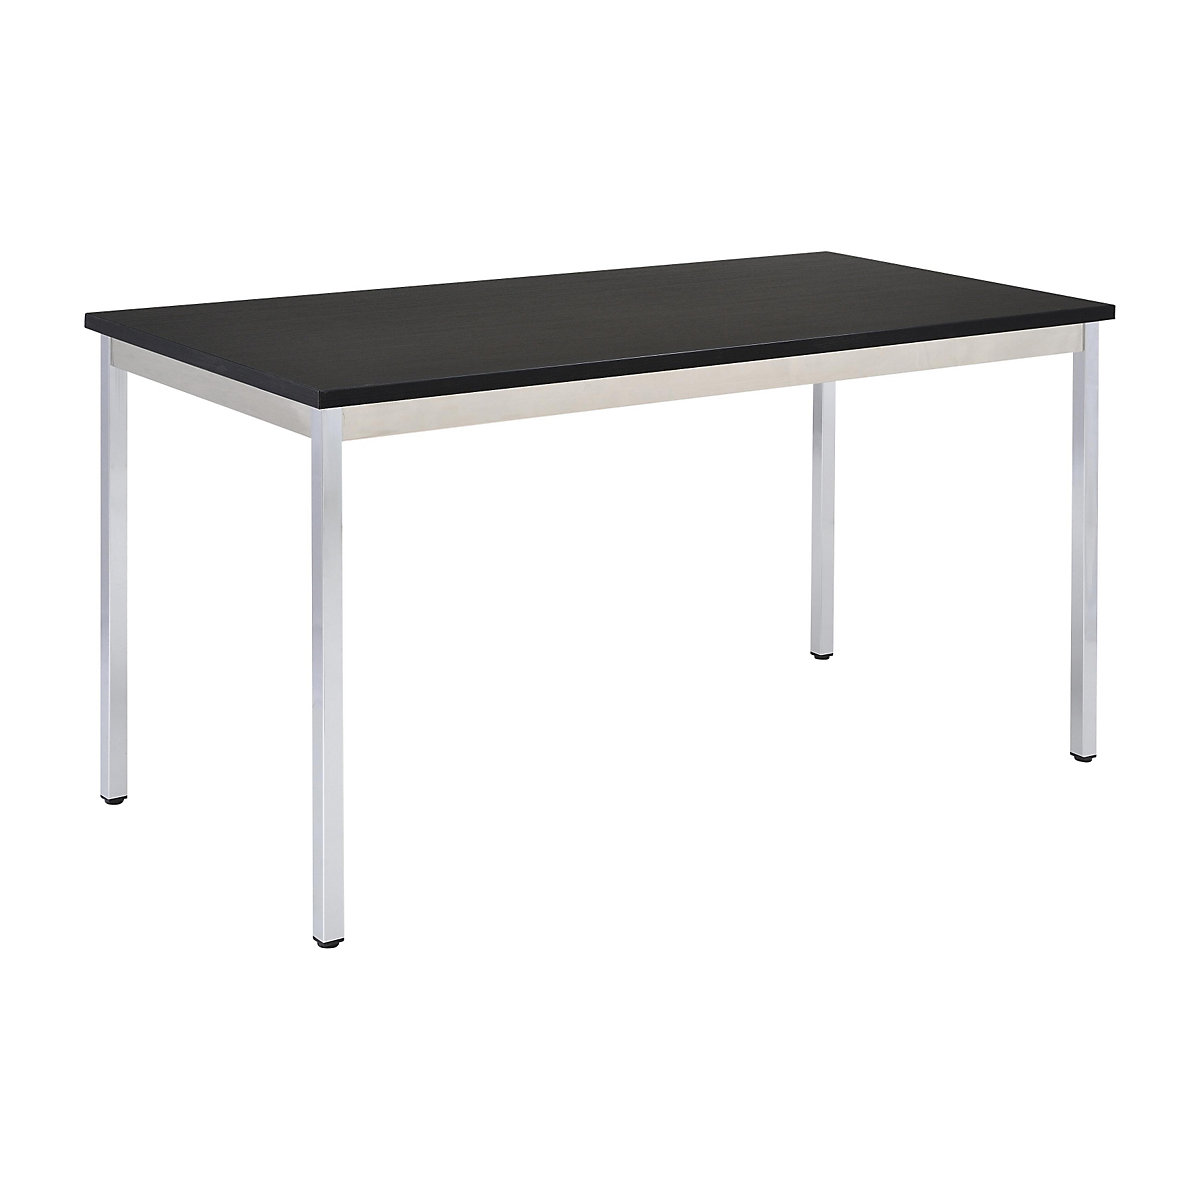 Višenamjenski stol – eurokraft basic, pravokutna izvedba, VxŠxD 740 x 1600 x 800 mm, ploča u crnoj boji, kromirano postolje-16